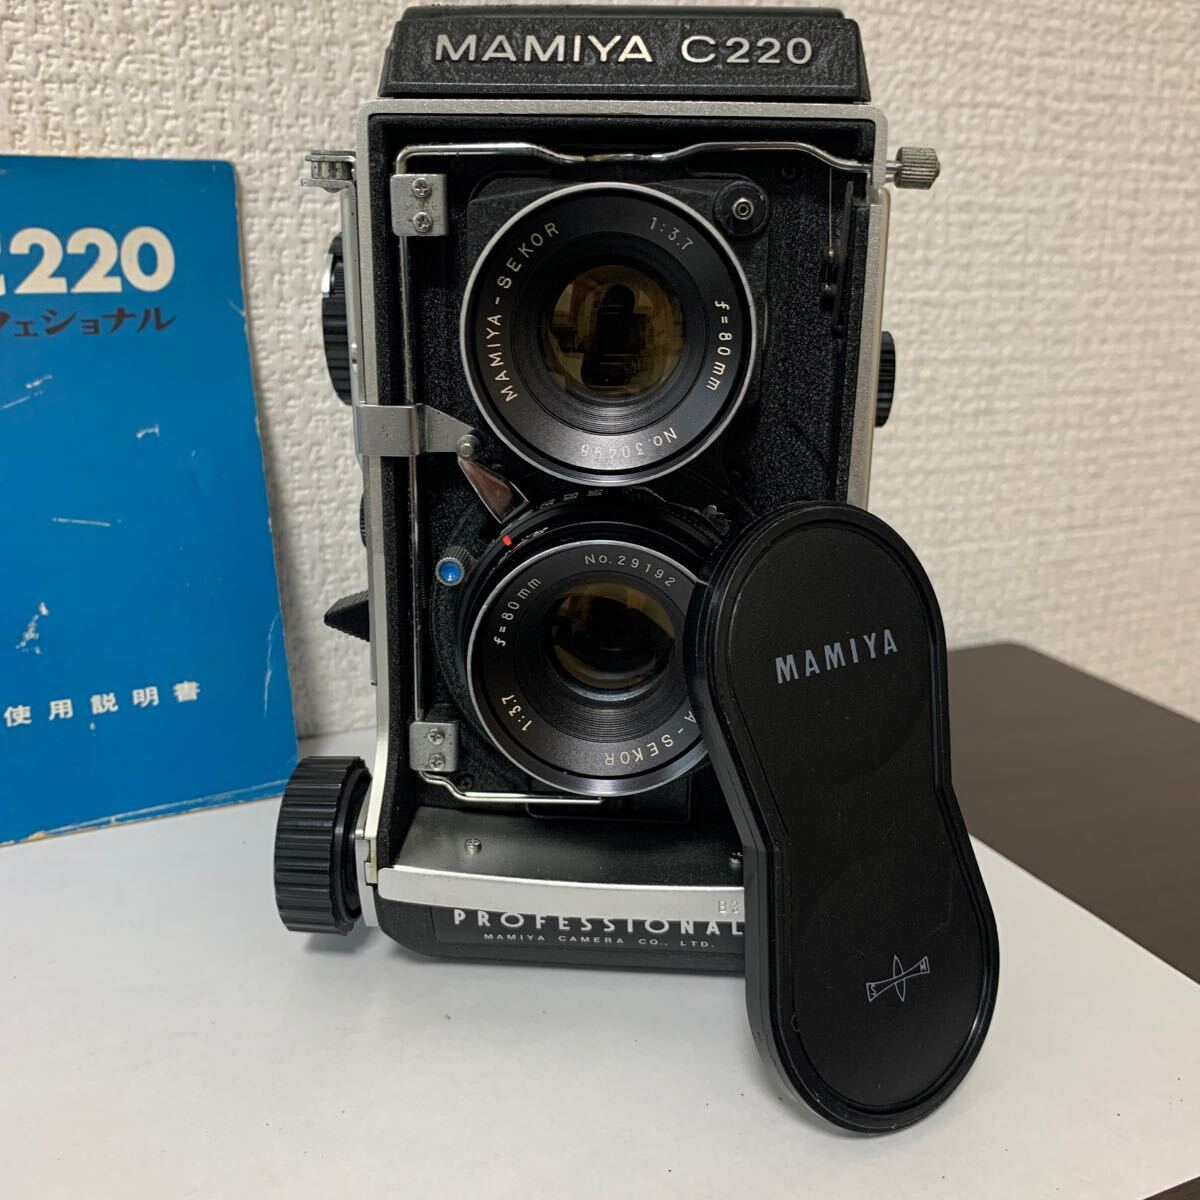 取説付き Mamiya C220 professional F 二眼カメラ フィルムカメラ MAMIYA-SEKOR s 80mm F2.8 シャッターOK マミヤ